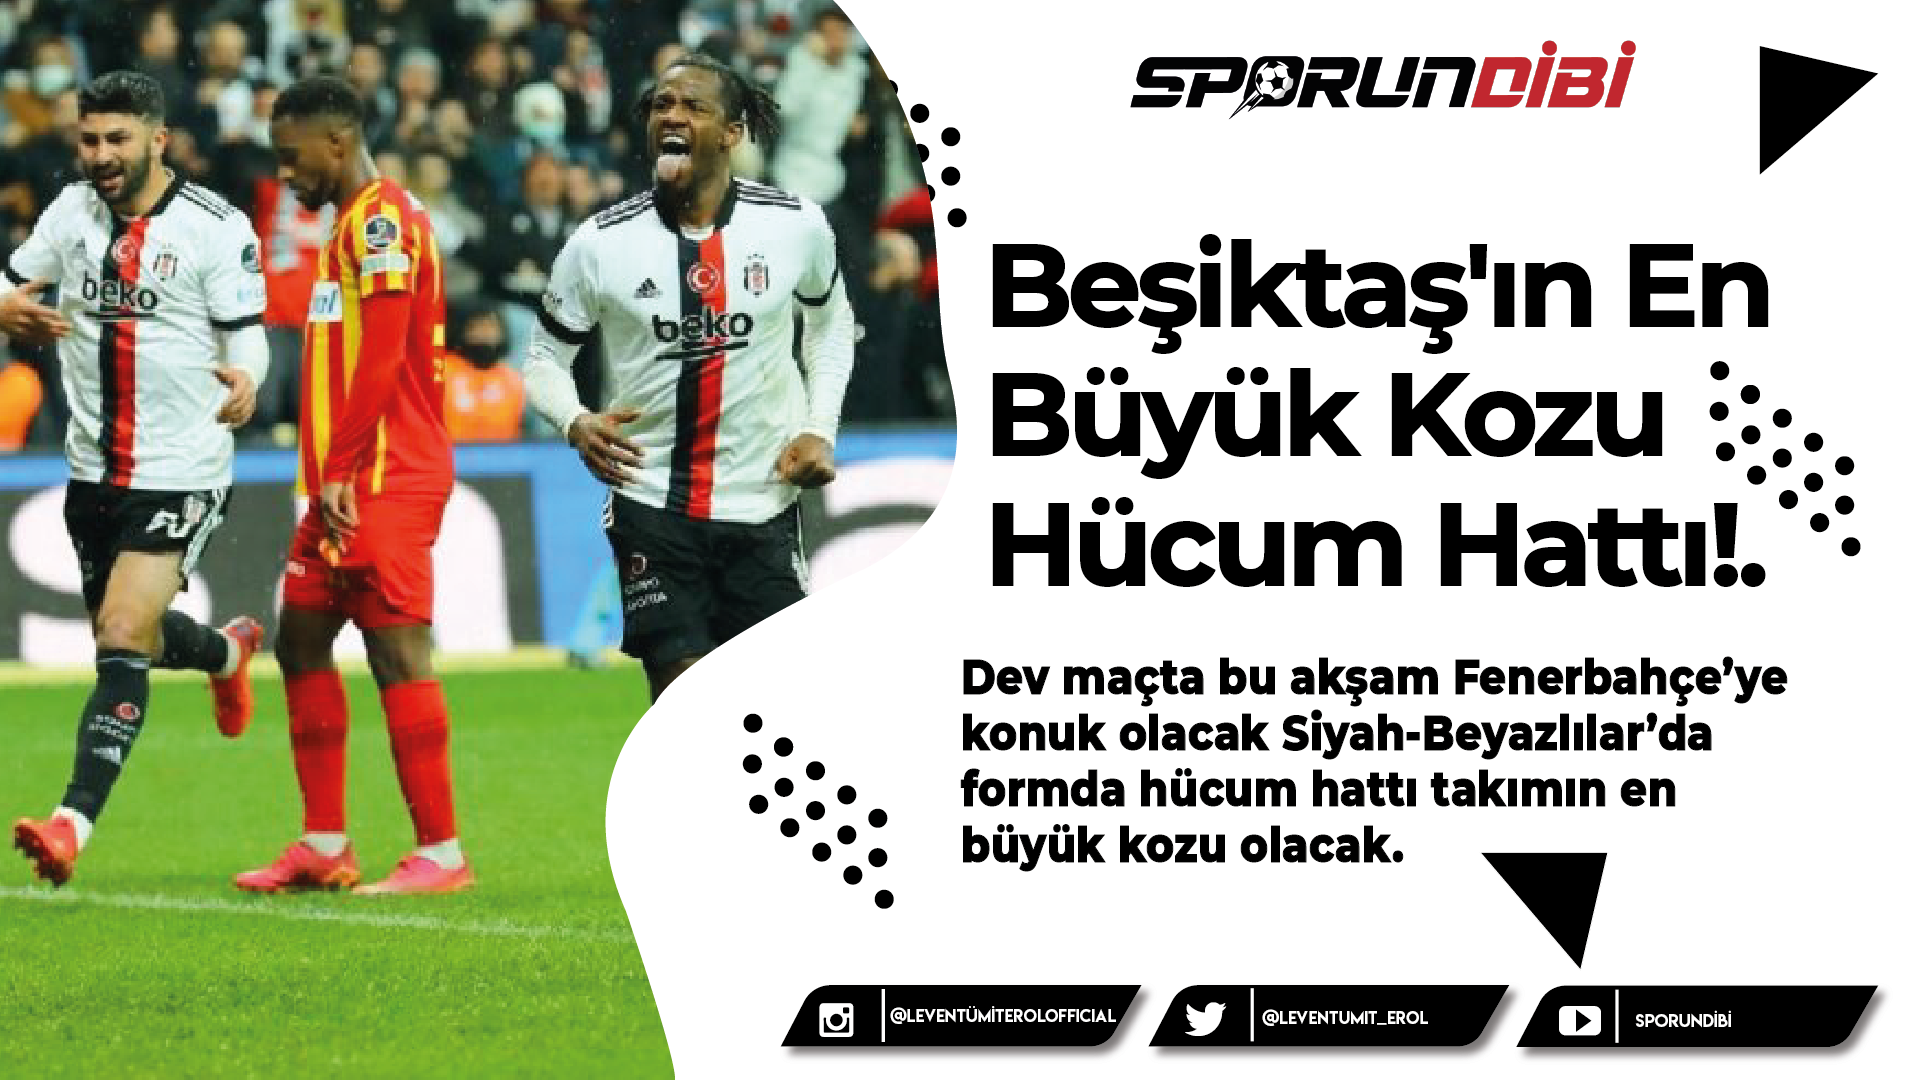 Beşiktaş'ın En Büyük Kozu Hücum Hattı!.